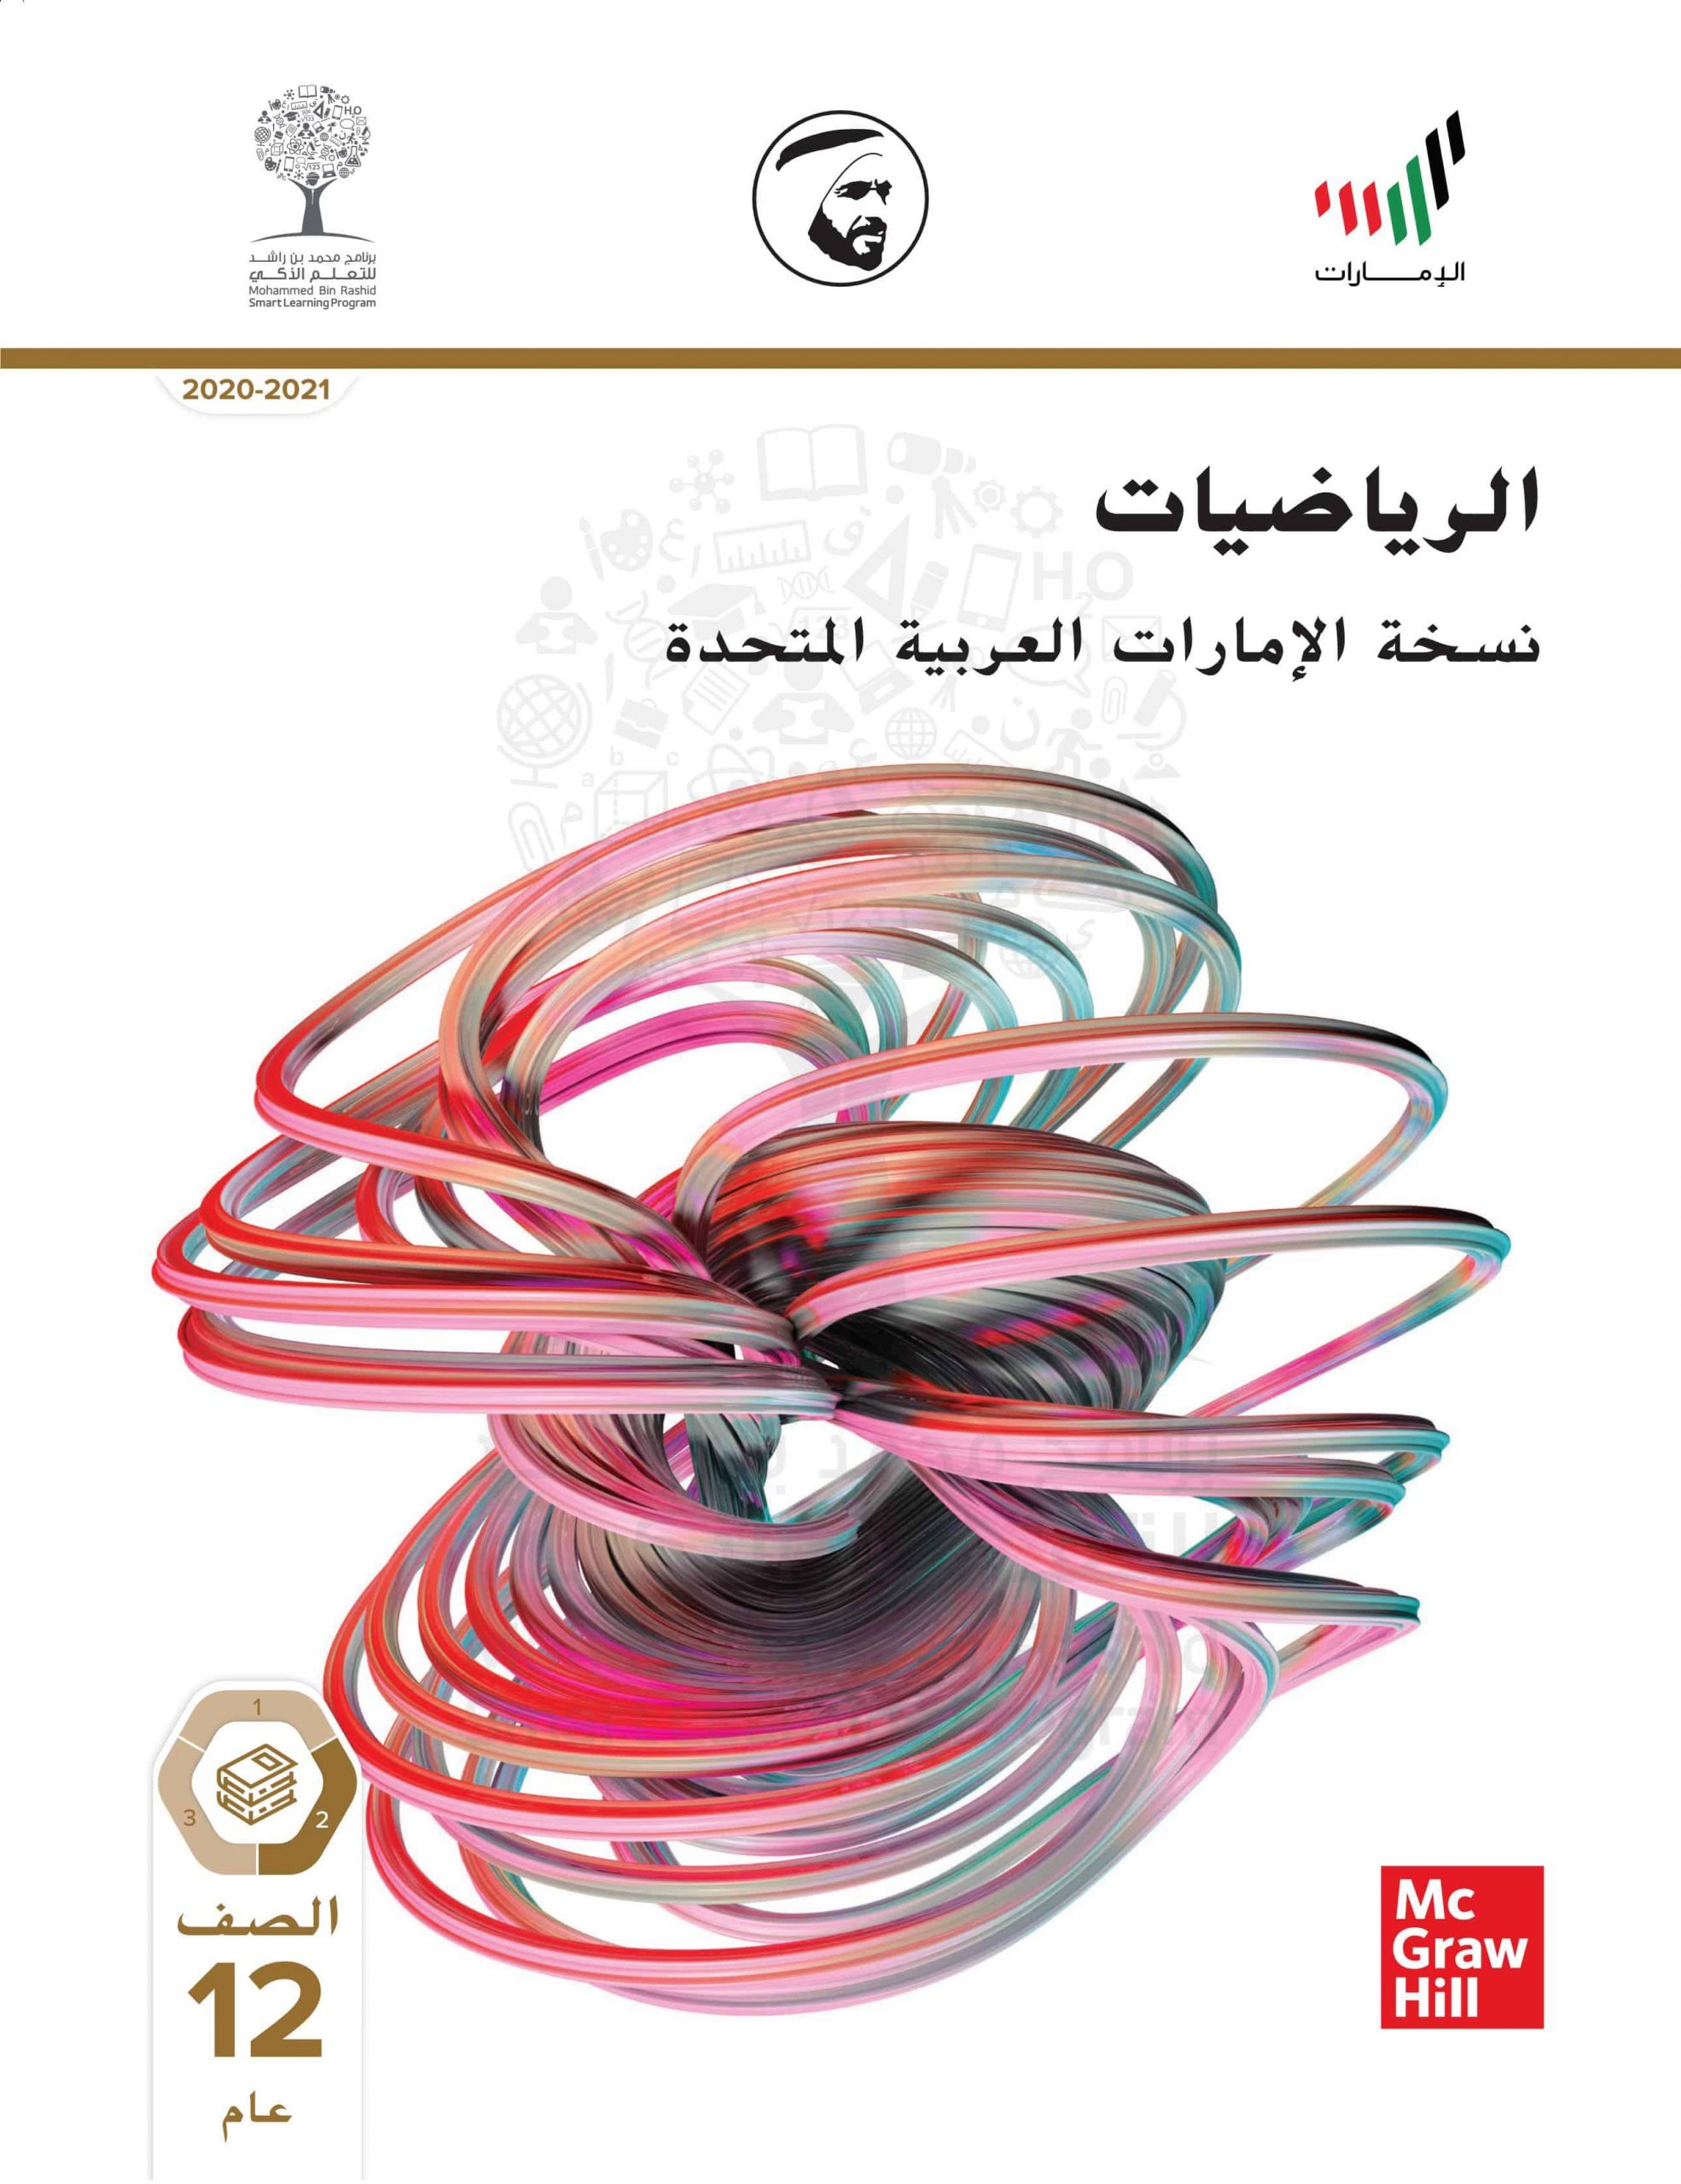 كتاب الطالب الفصل الدراسي الثاني 2020-2021 الصف الثاني عشر عام مادة الرياضيات المتكاملة 